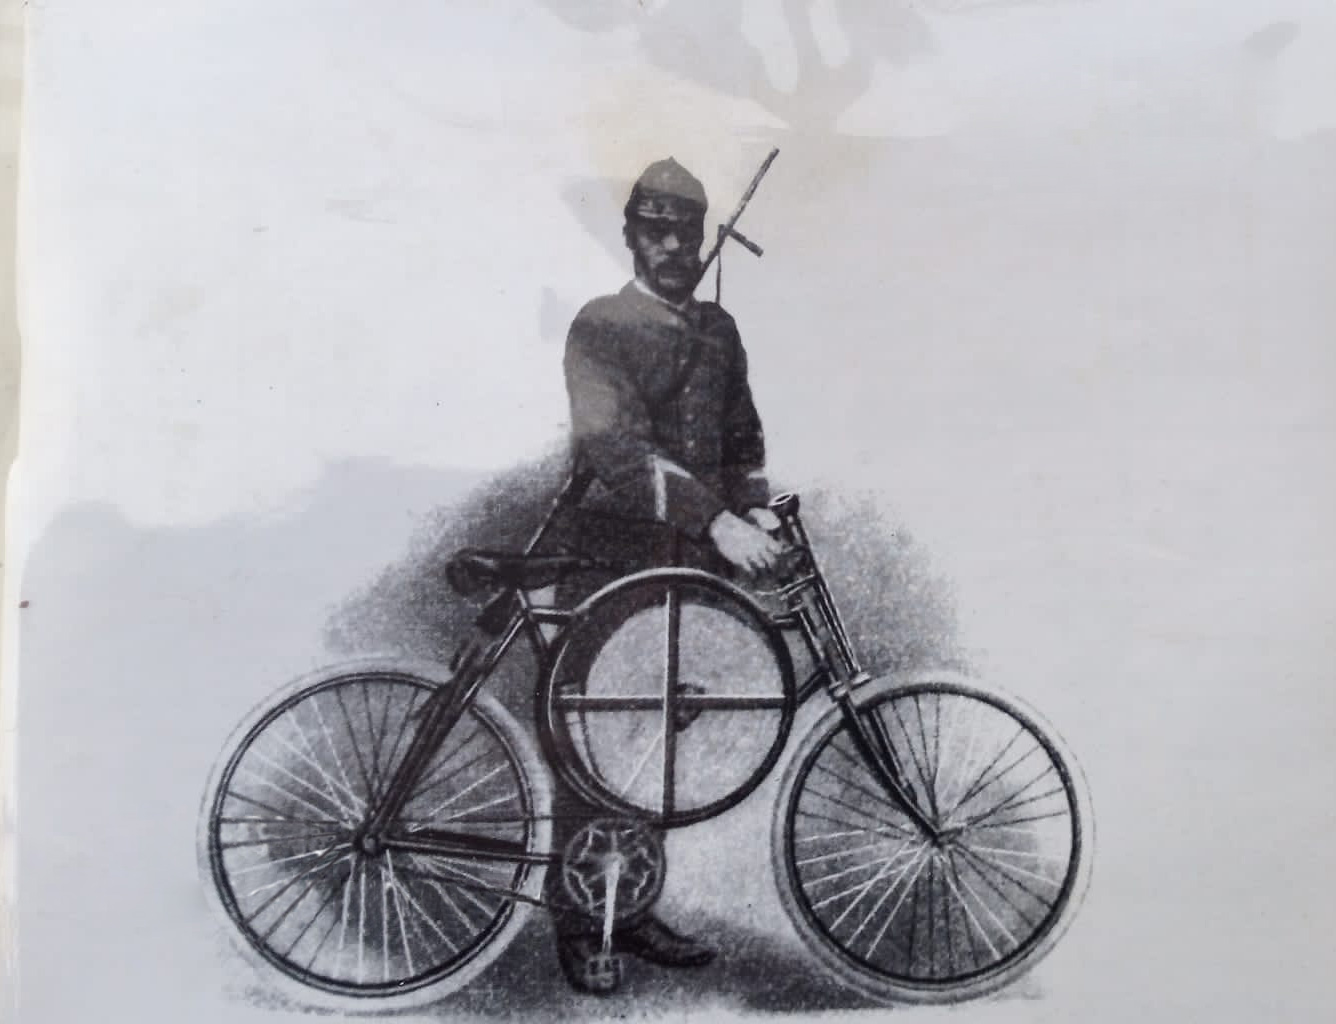 Profeta felicidad Diploma Museo de emergencia, una píldora de la historia: la bicicleta del bombero